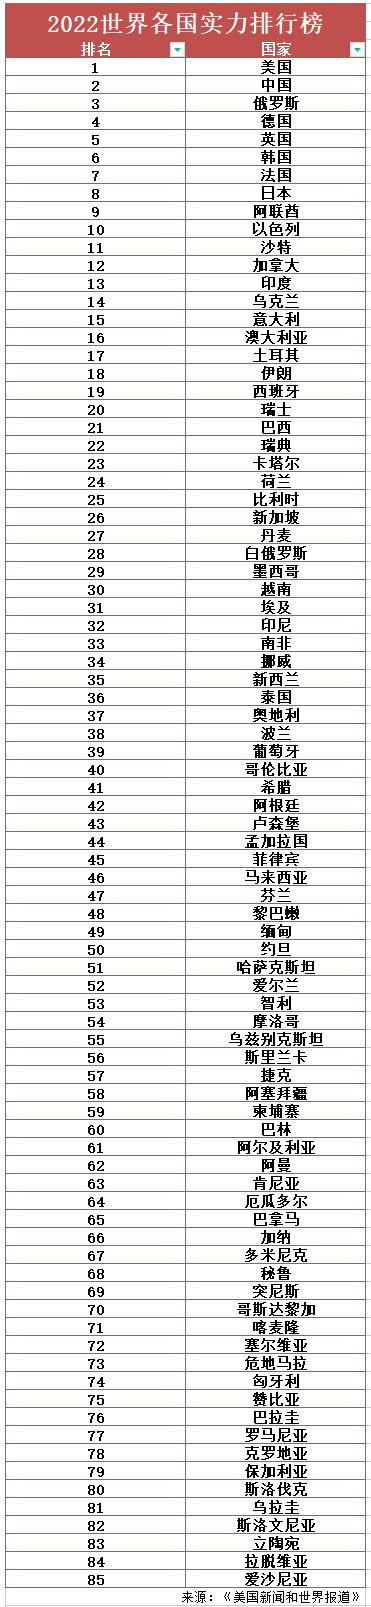 台湾蓝媒绿媒名单_美媒发布全球最强国家名单_美媒评全球领袖排名